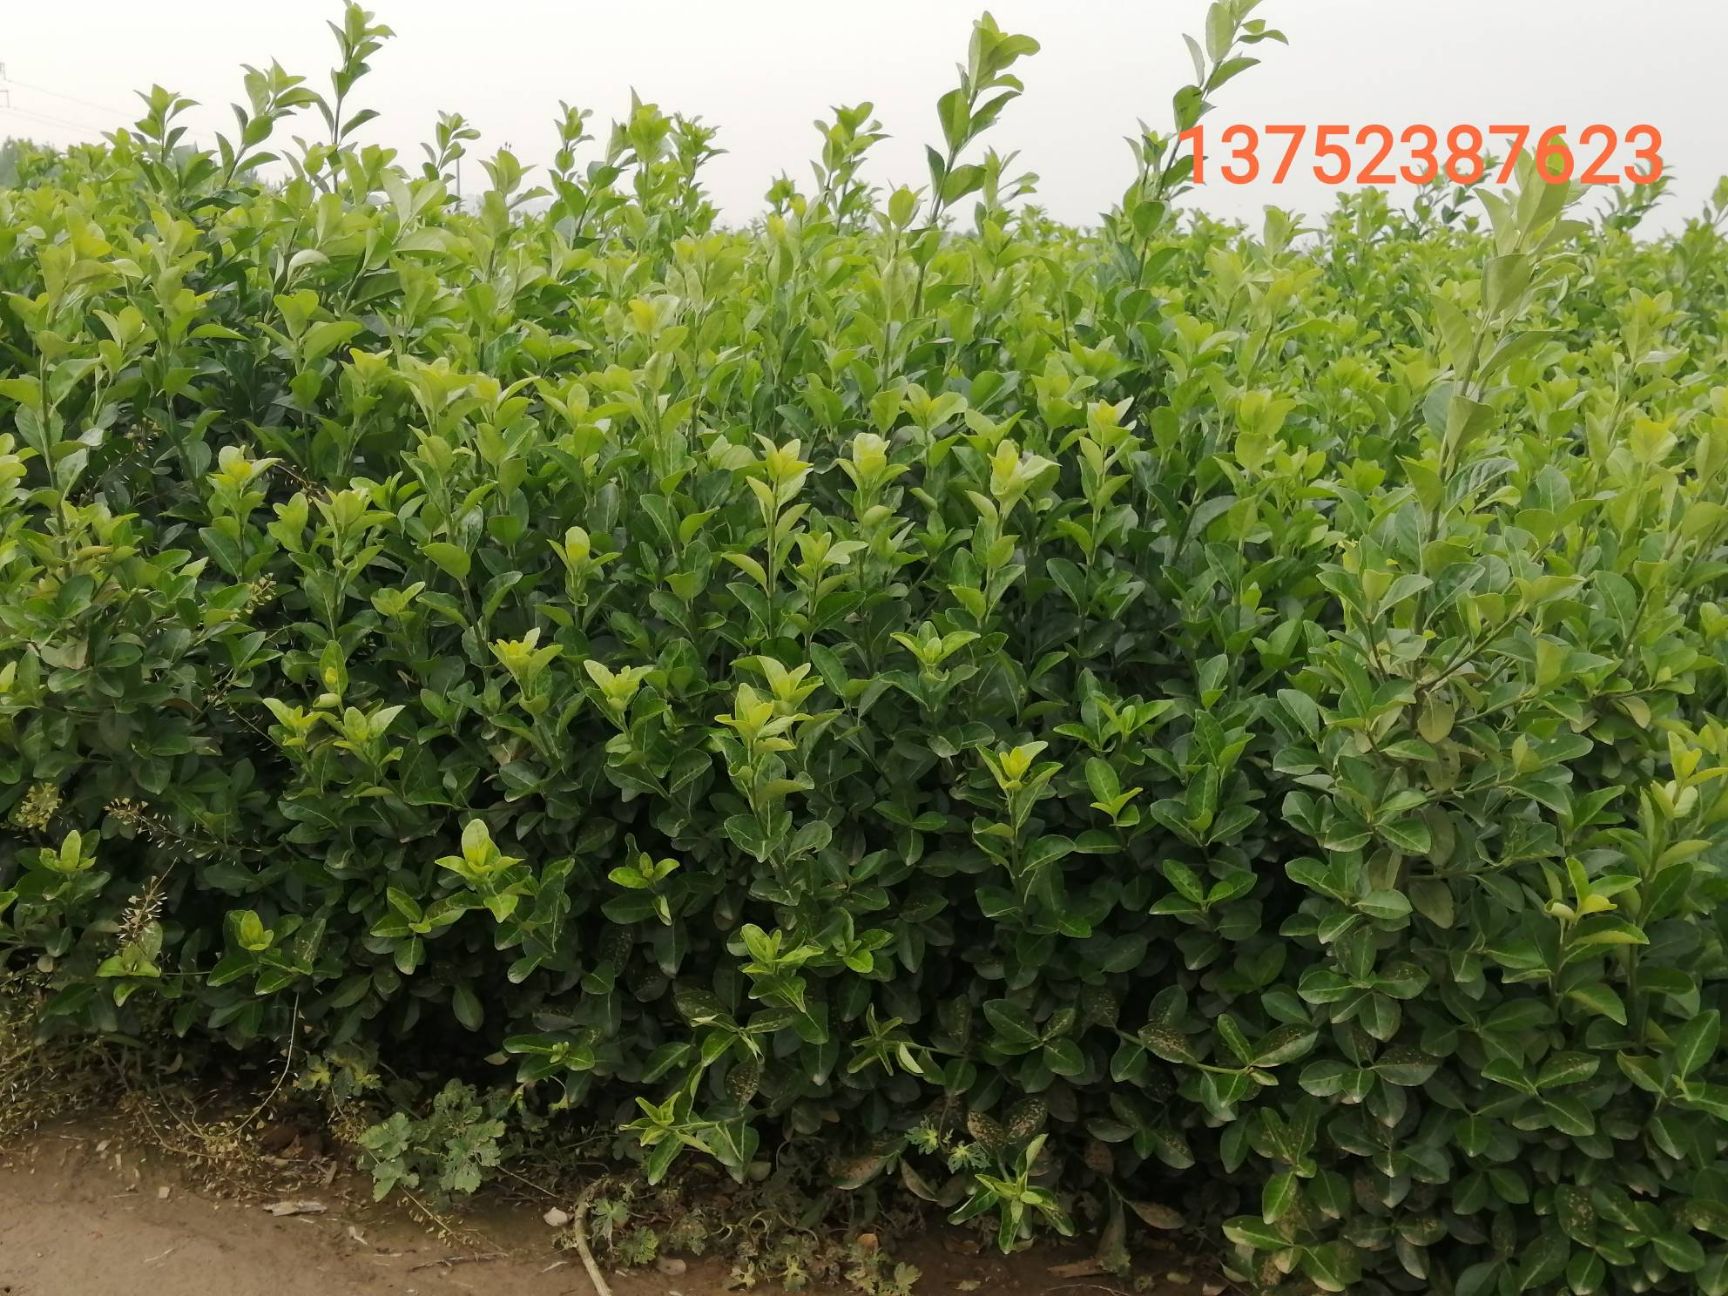 顺平县胶东卫矛 常年出售各种绿化苗木，草莓苗。价格面议。请加关注，方便查找。